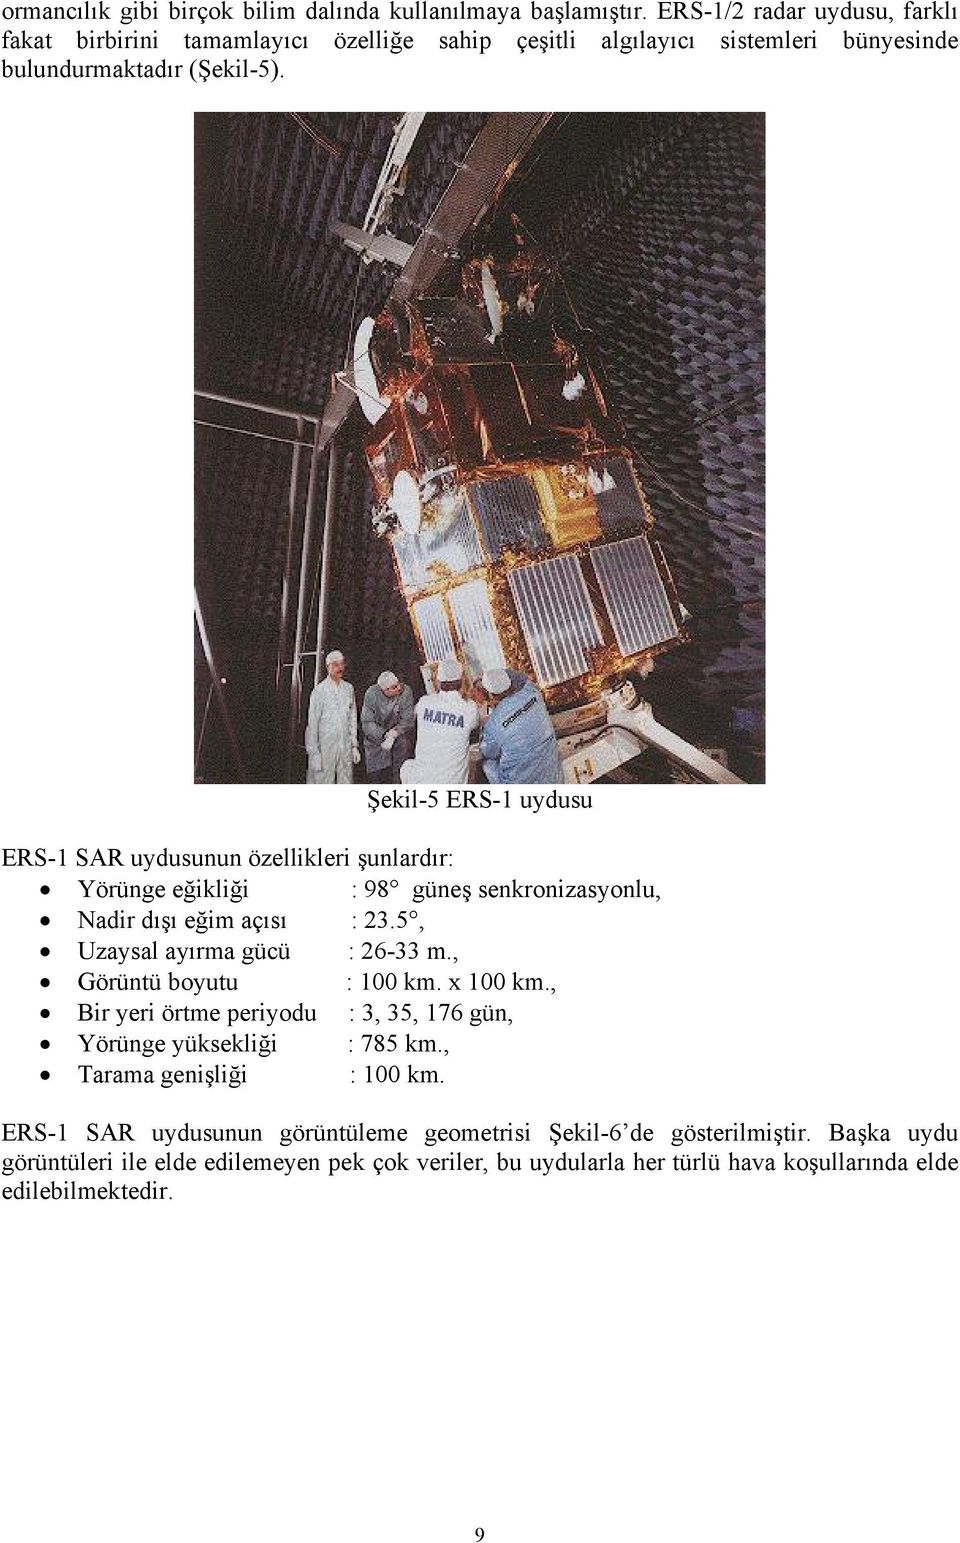 Şekil-5 ERS-1 uydusu ERS-1 SAR uydusunun özellikleri şunlardır: Yörünge eğikliği : 98 güneş senkronizasyonlu, Nadir dışı eğim açısı : 23.5, Uzaysal ayırma gücü : 26-33 m.